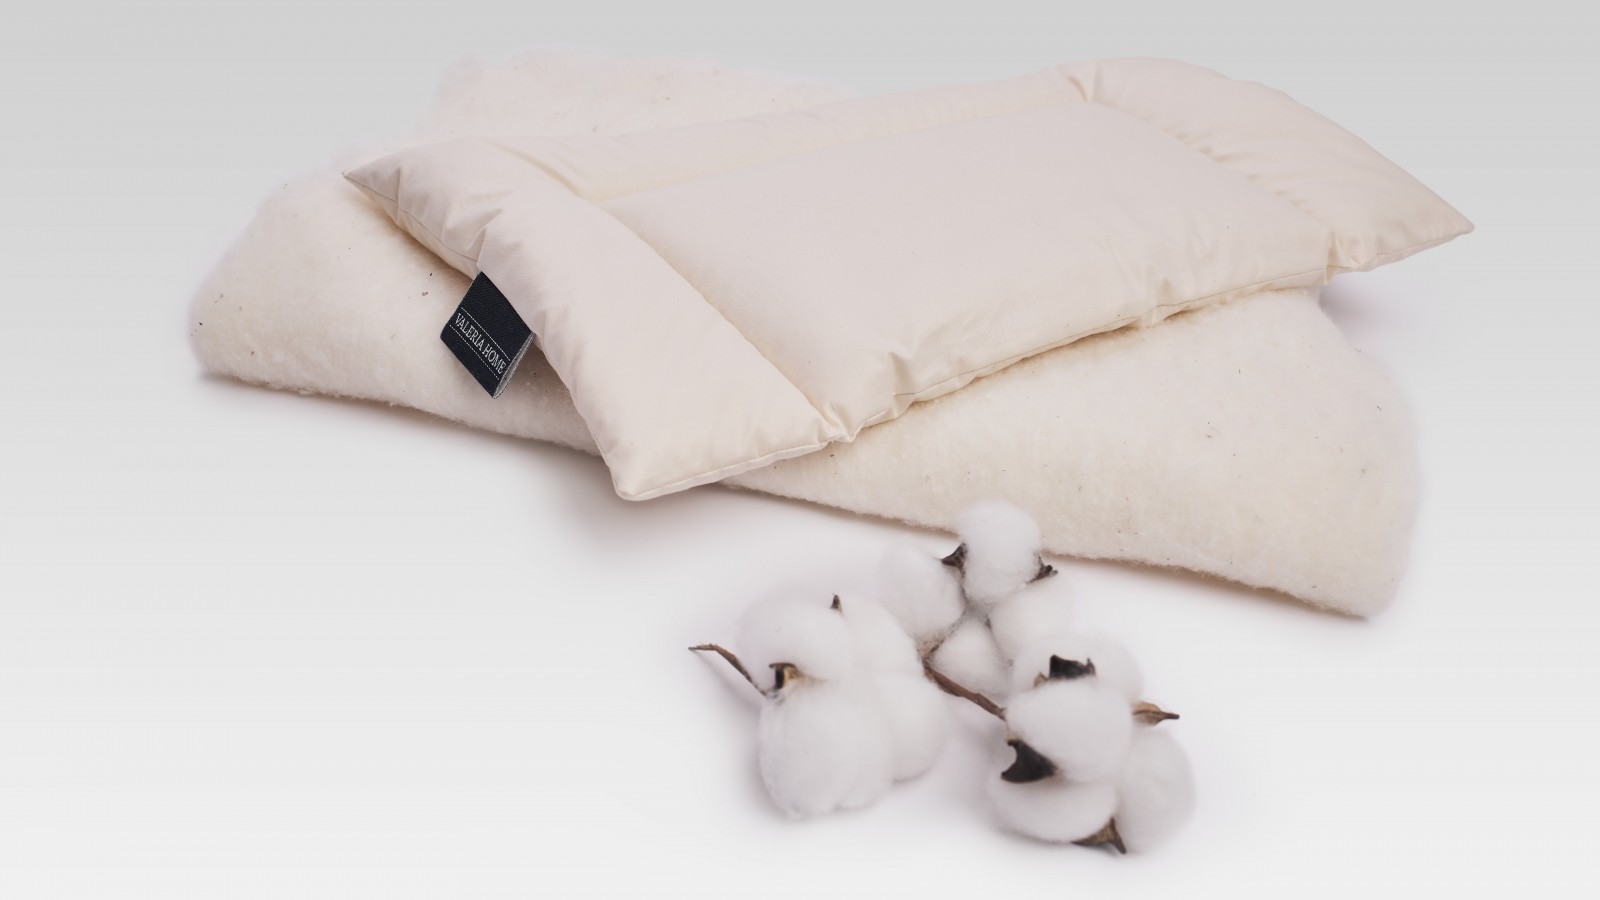 Le coussin bébé BABY DREAM pour lit doux, dimensions 35x50 cm. Asile